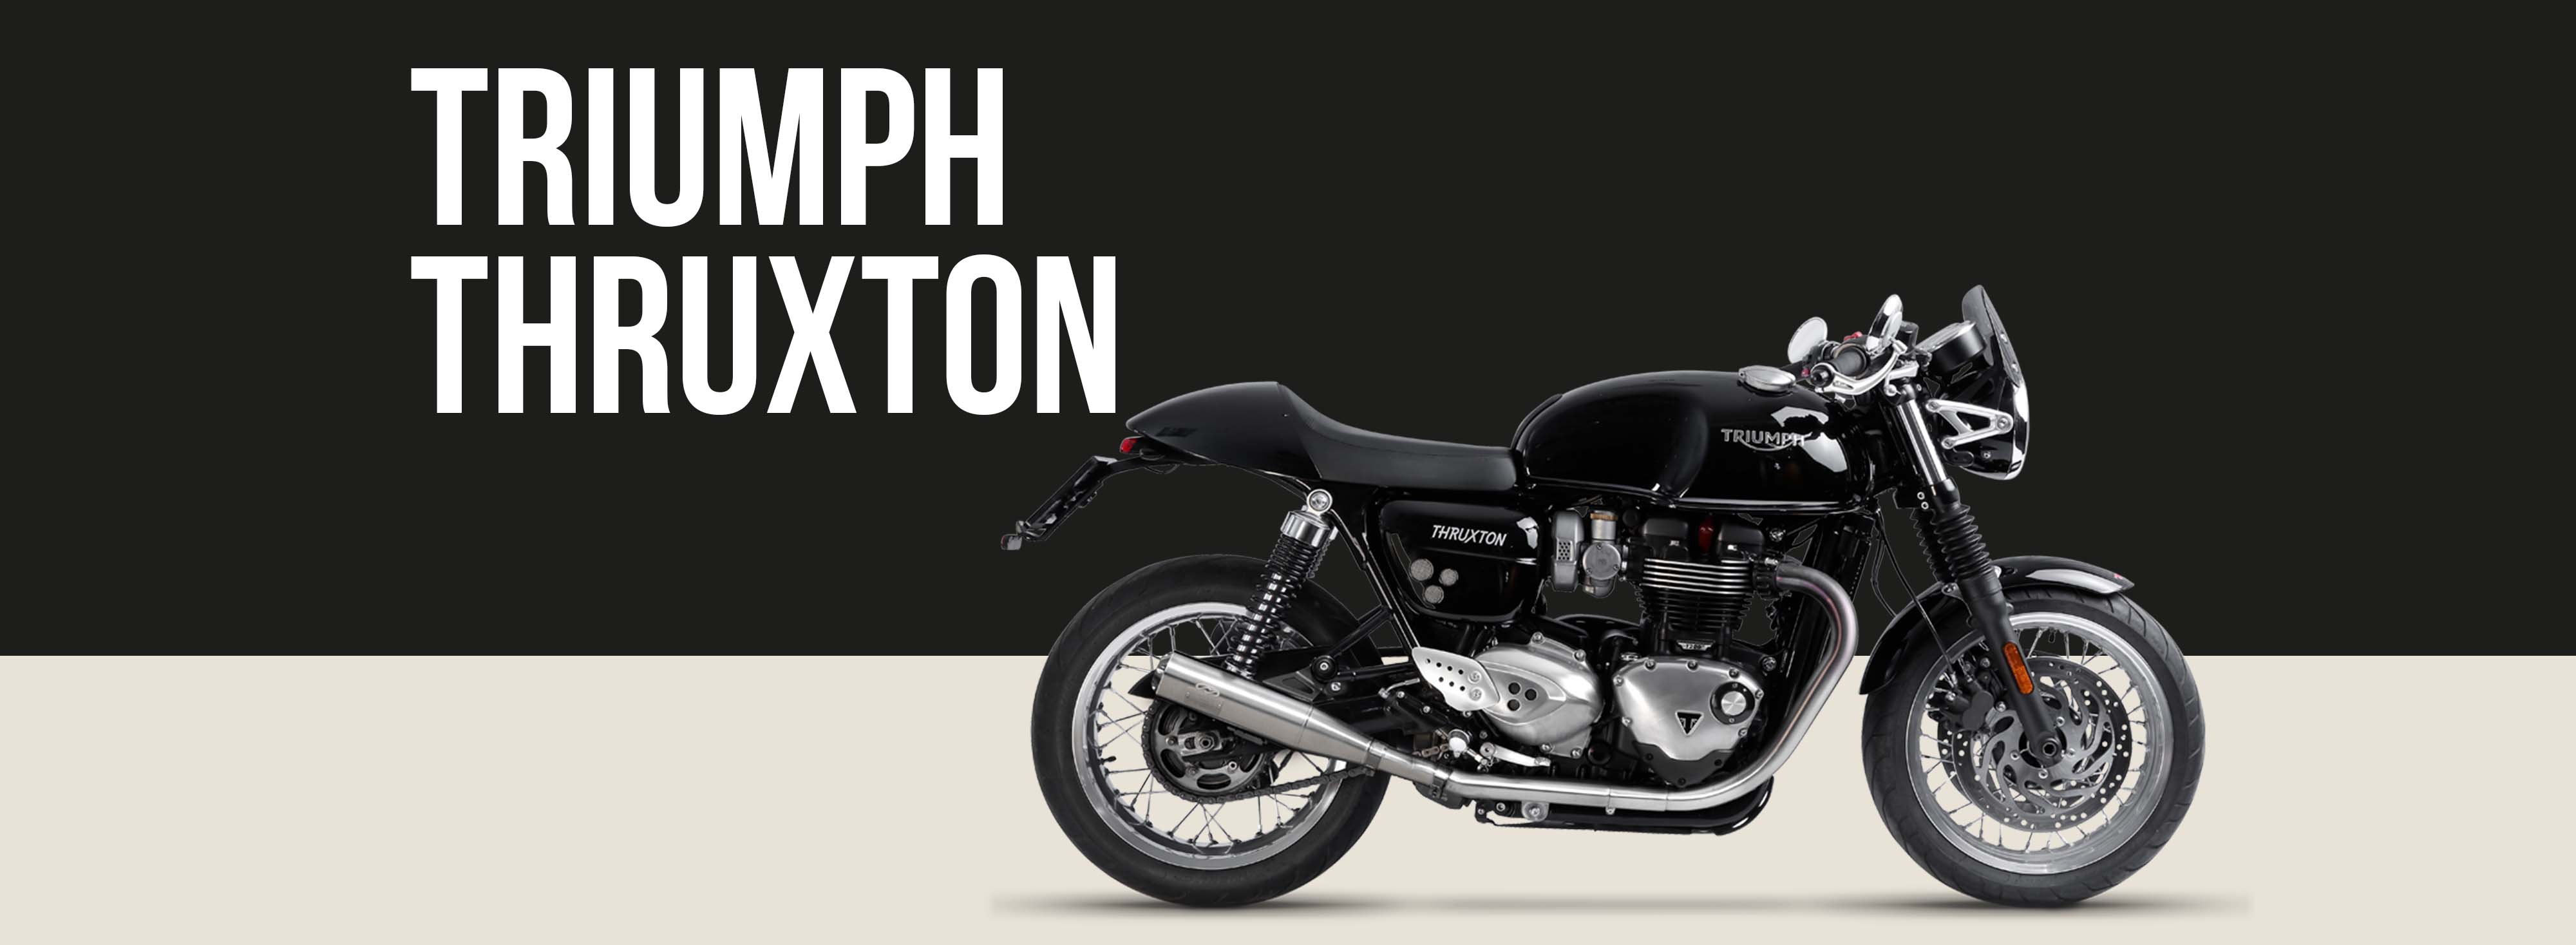 Triumph Thruxton Motorcycle Brand Page Header